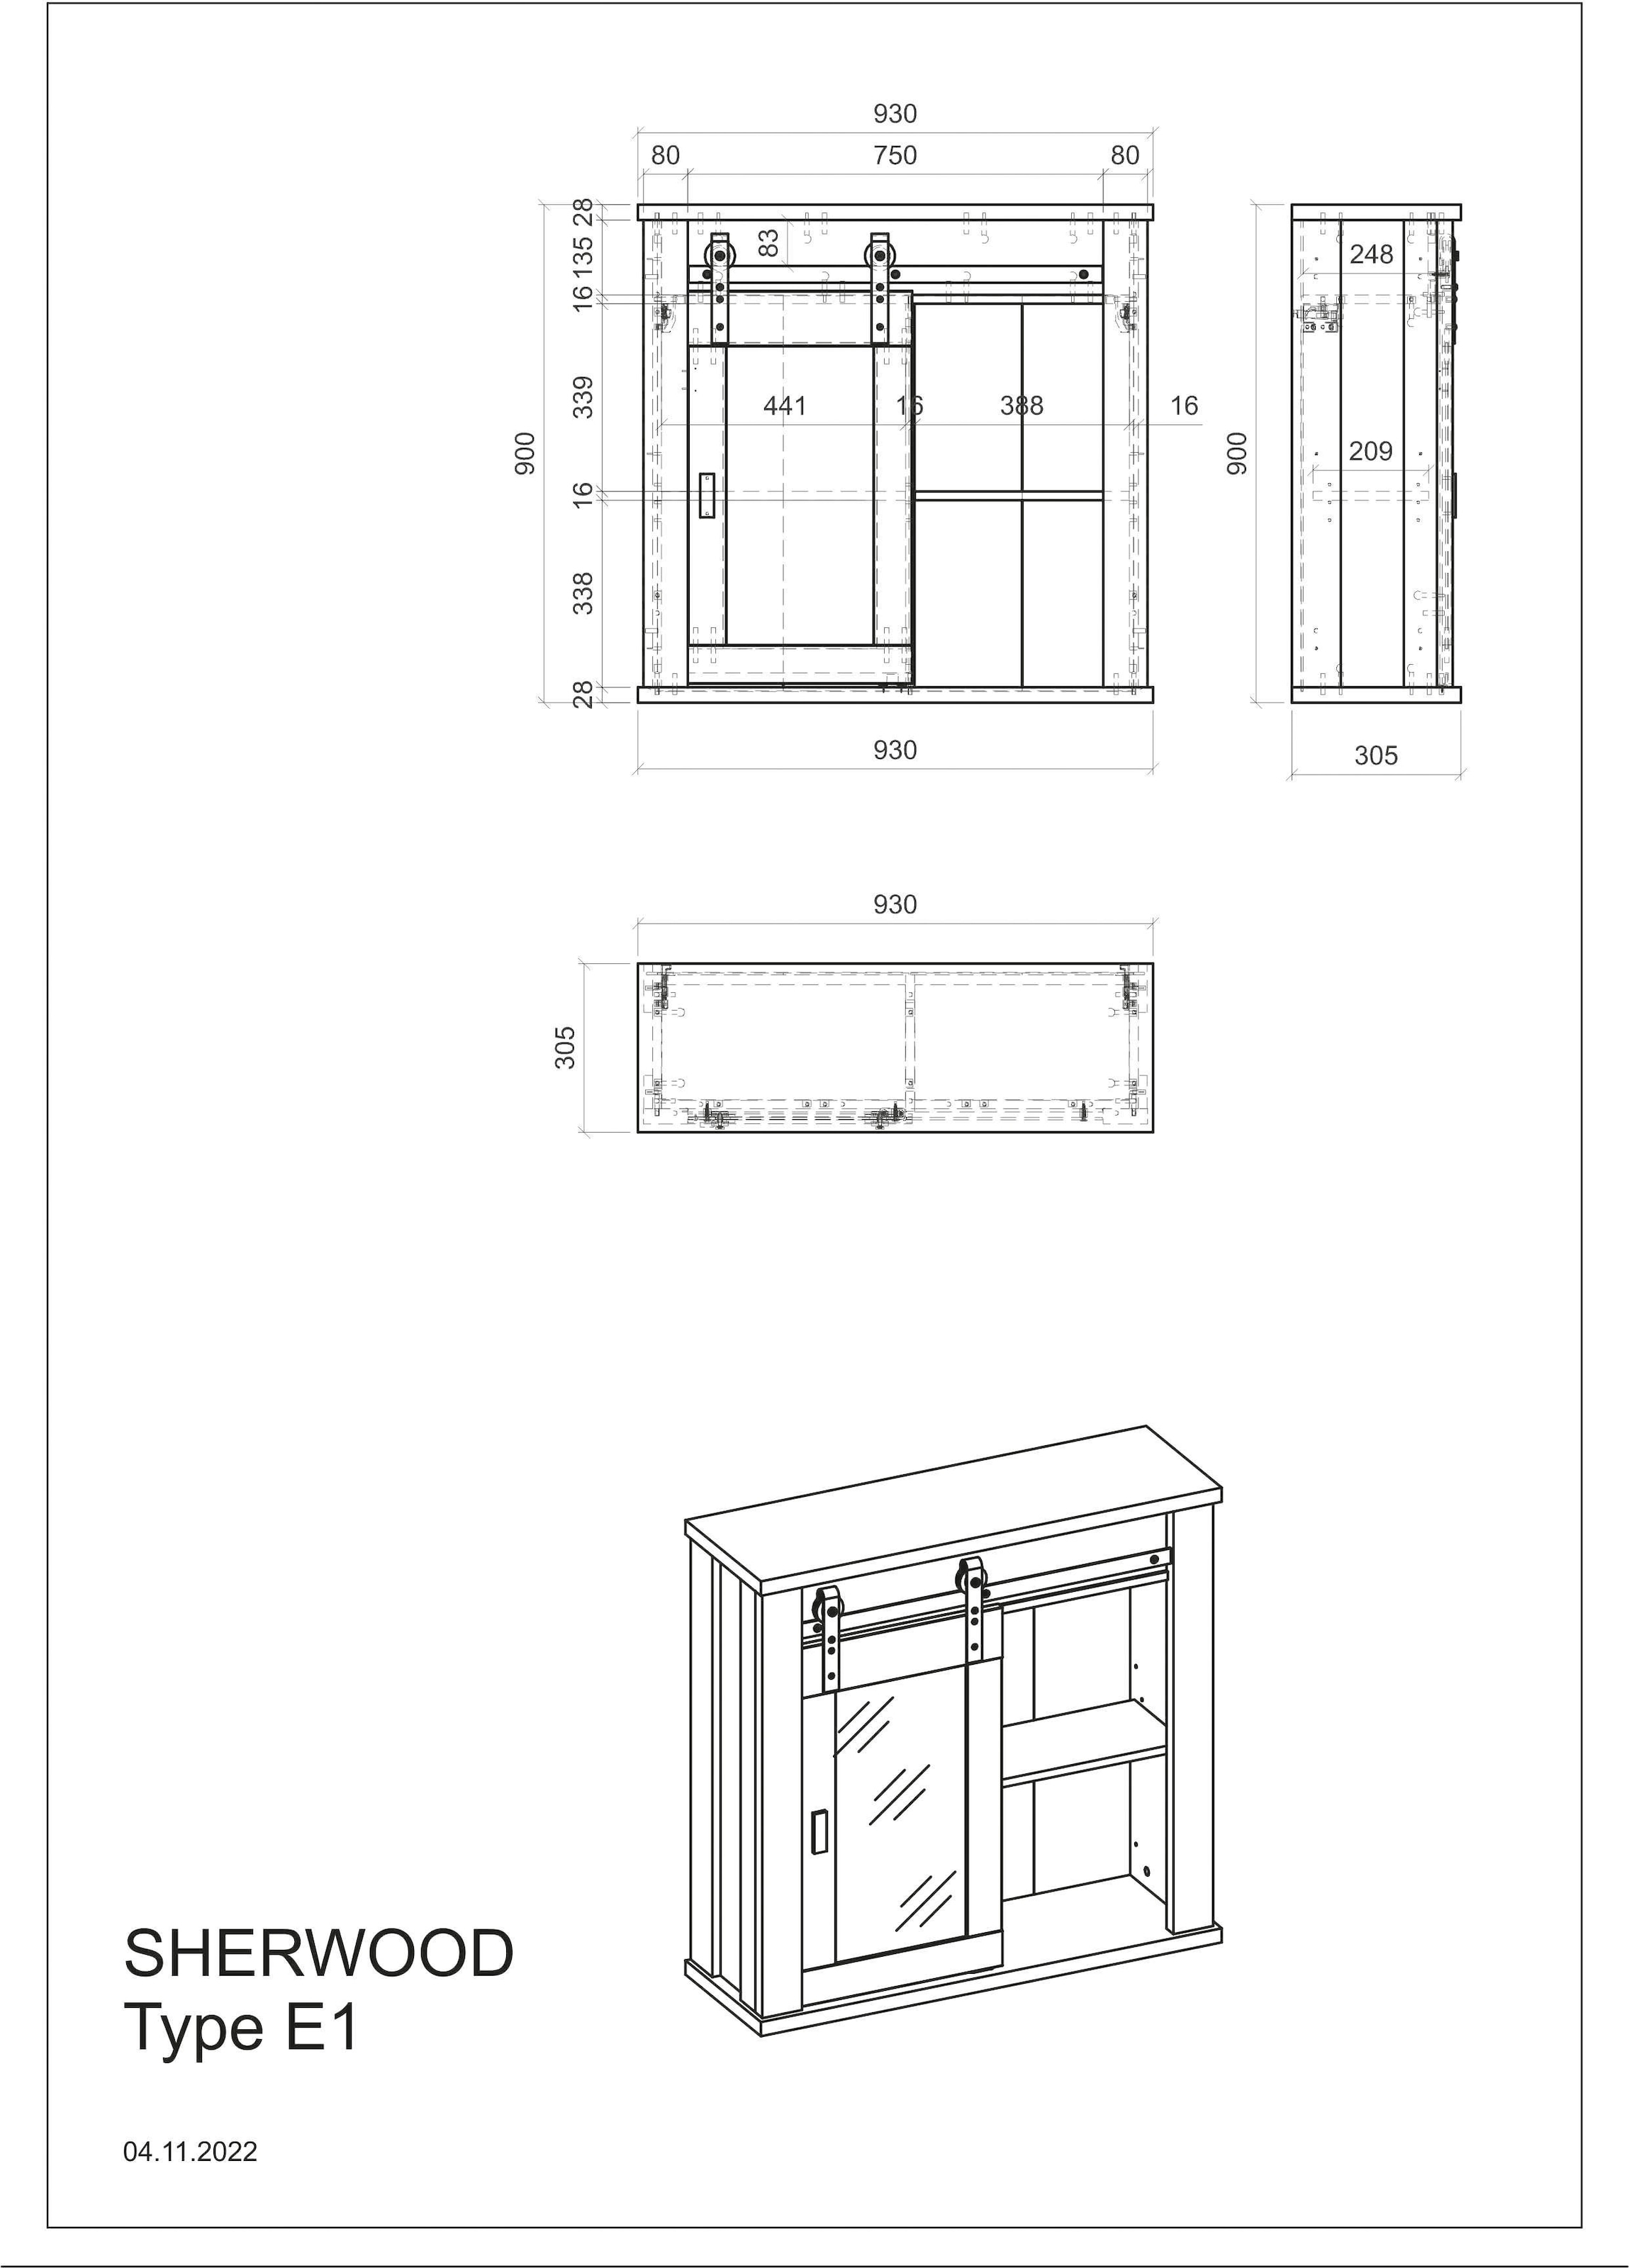 Home affaire Hängeschrank »Sherwood«, mit Scheunentorbeschlag aus Metall,  Höhe 90 cm kaufen